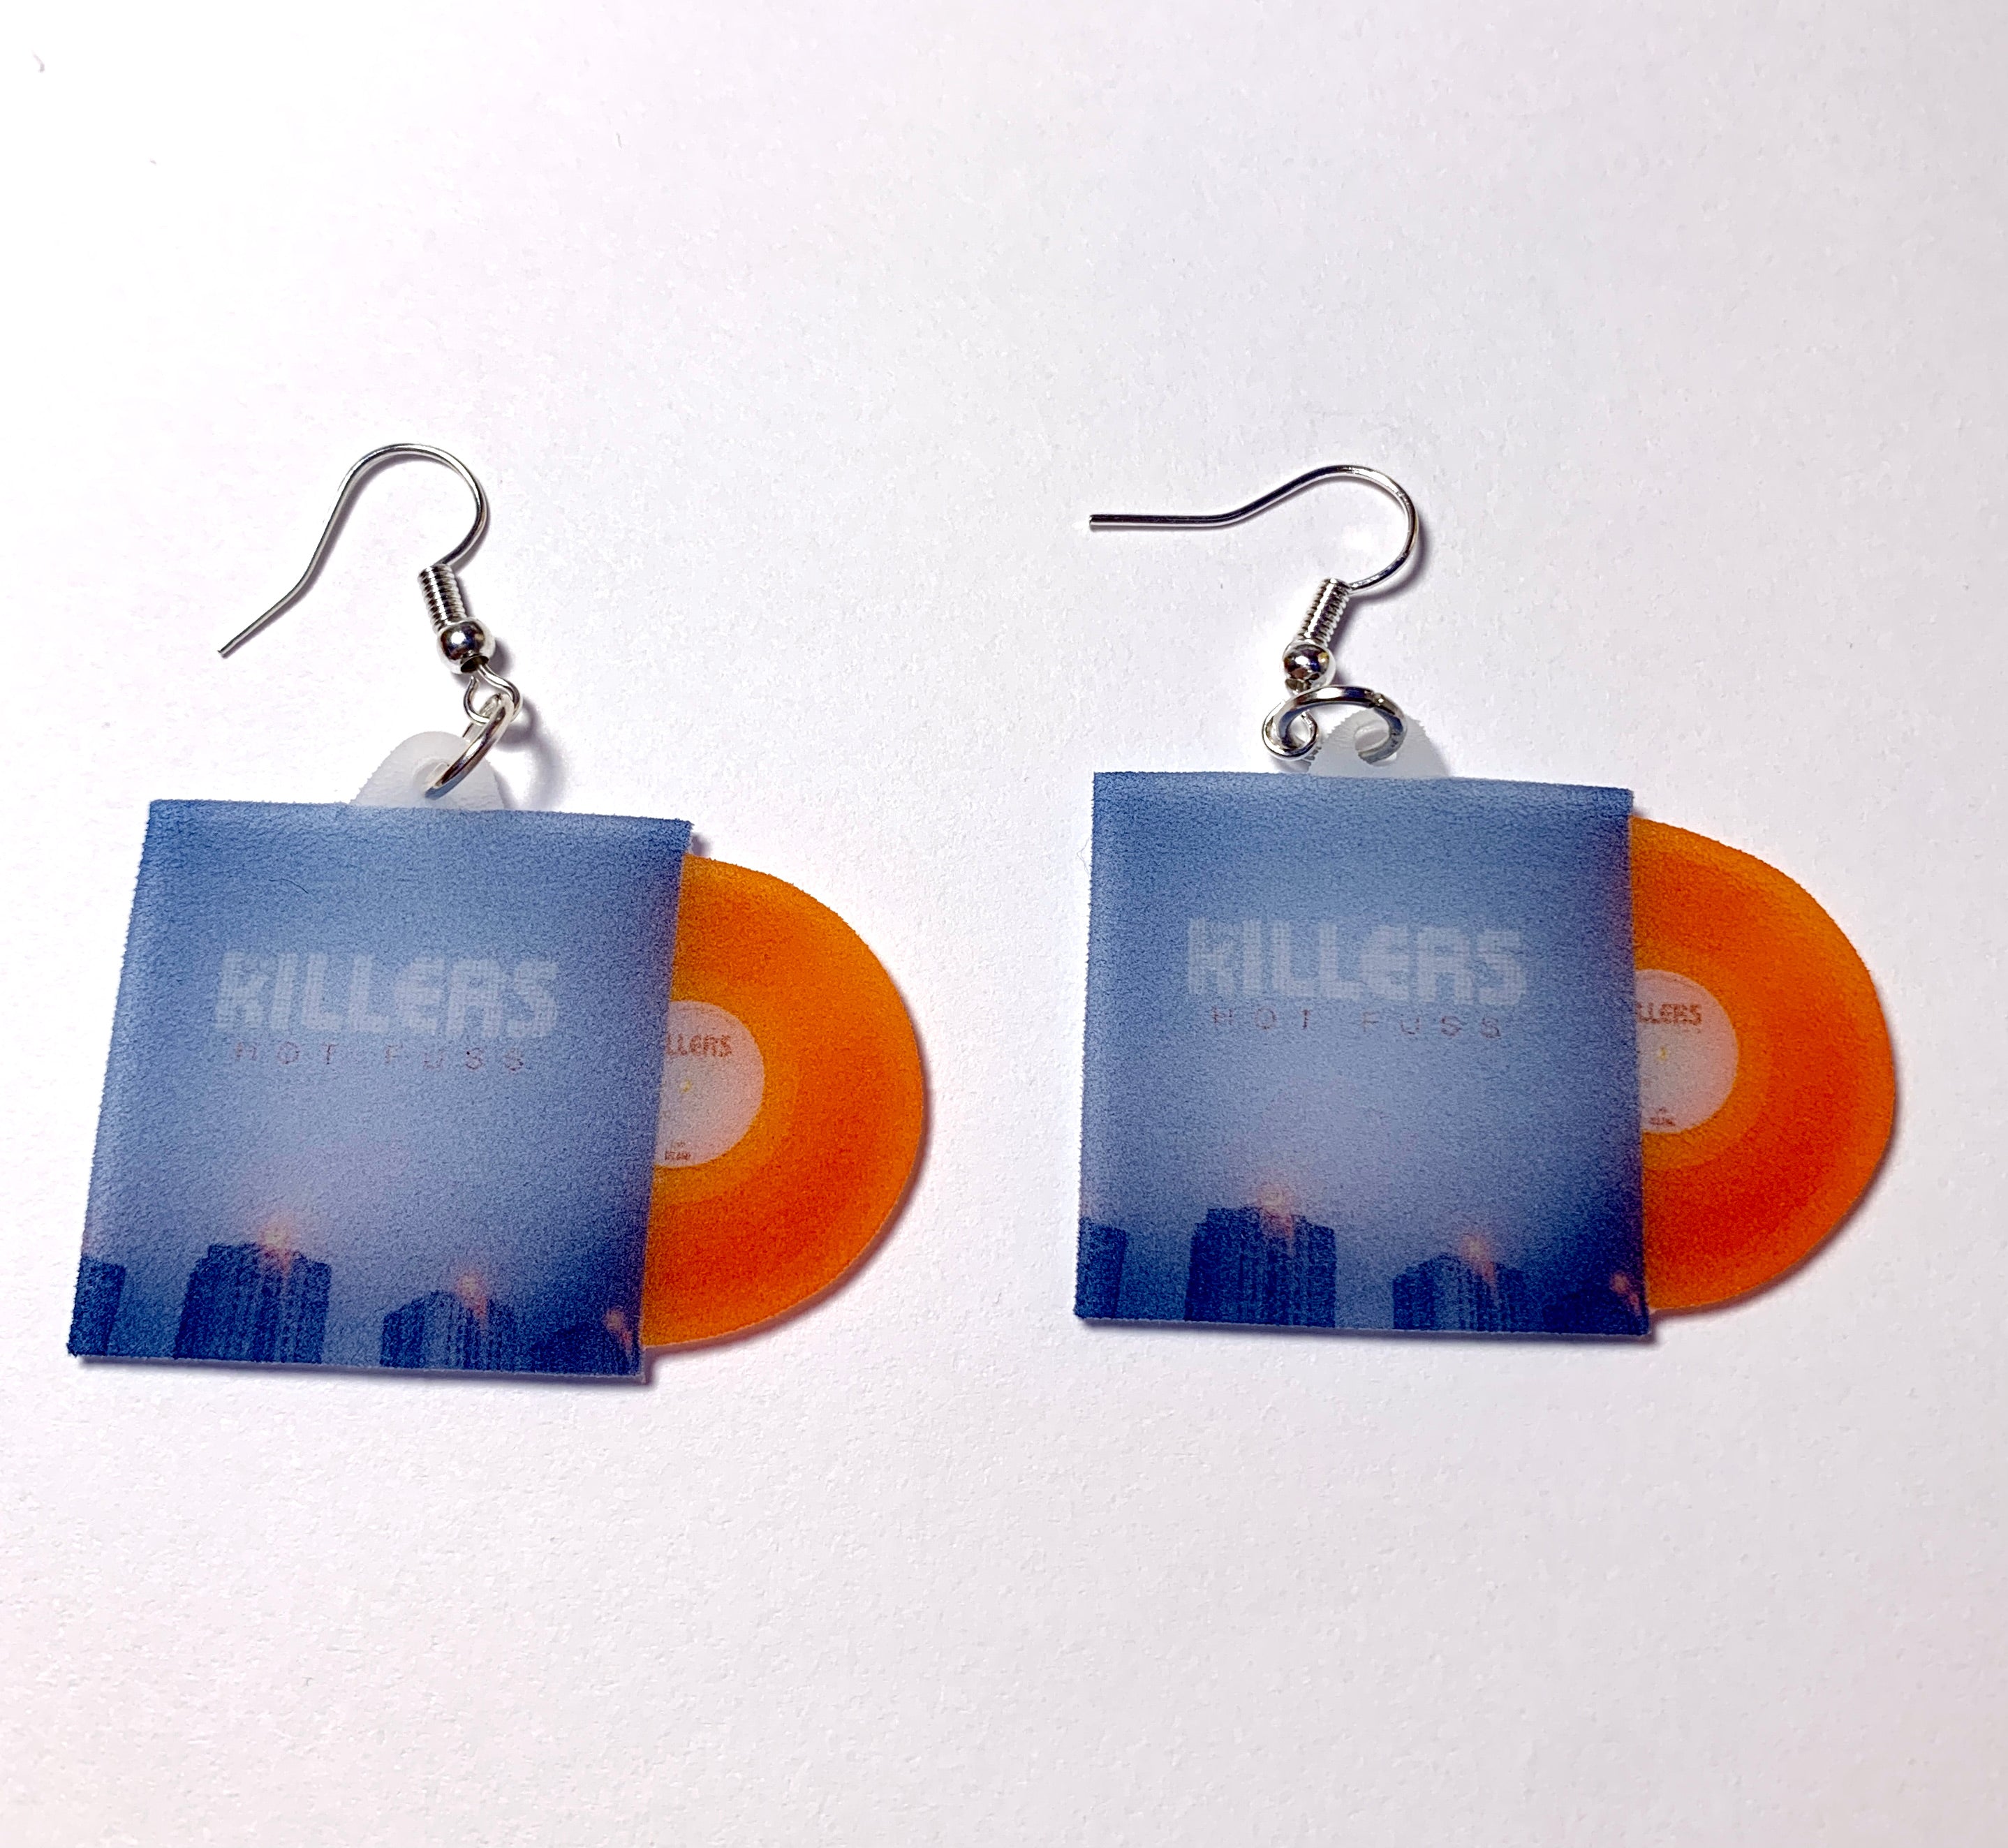 The Killers Hot Fuss Vinyl Album Handmade Earrings!